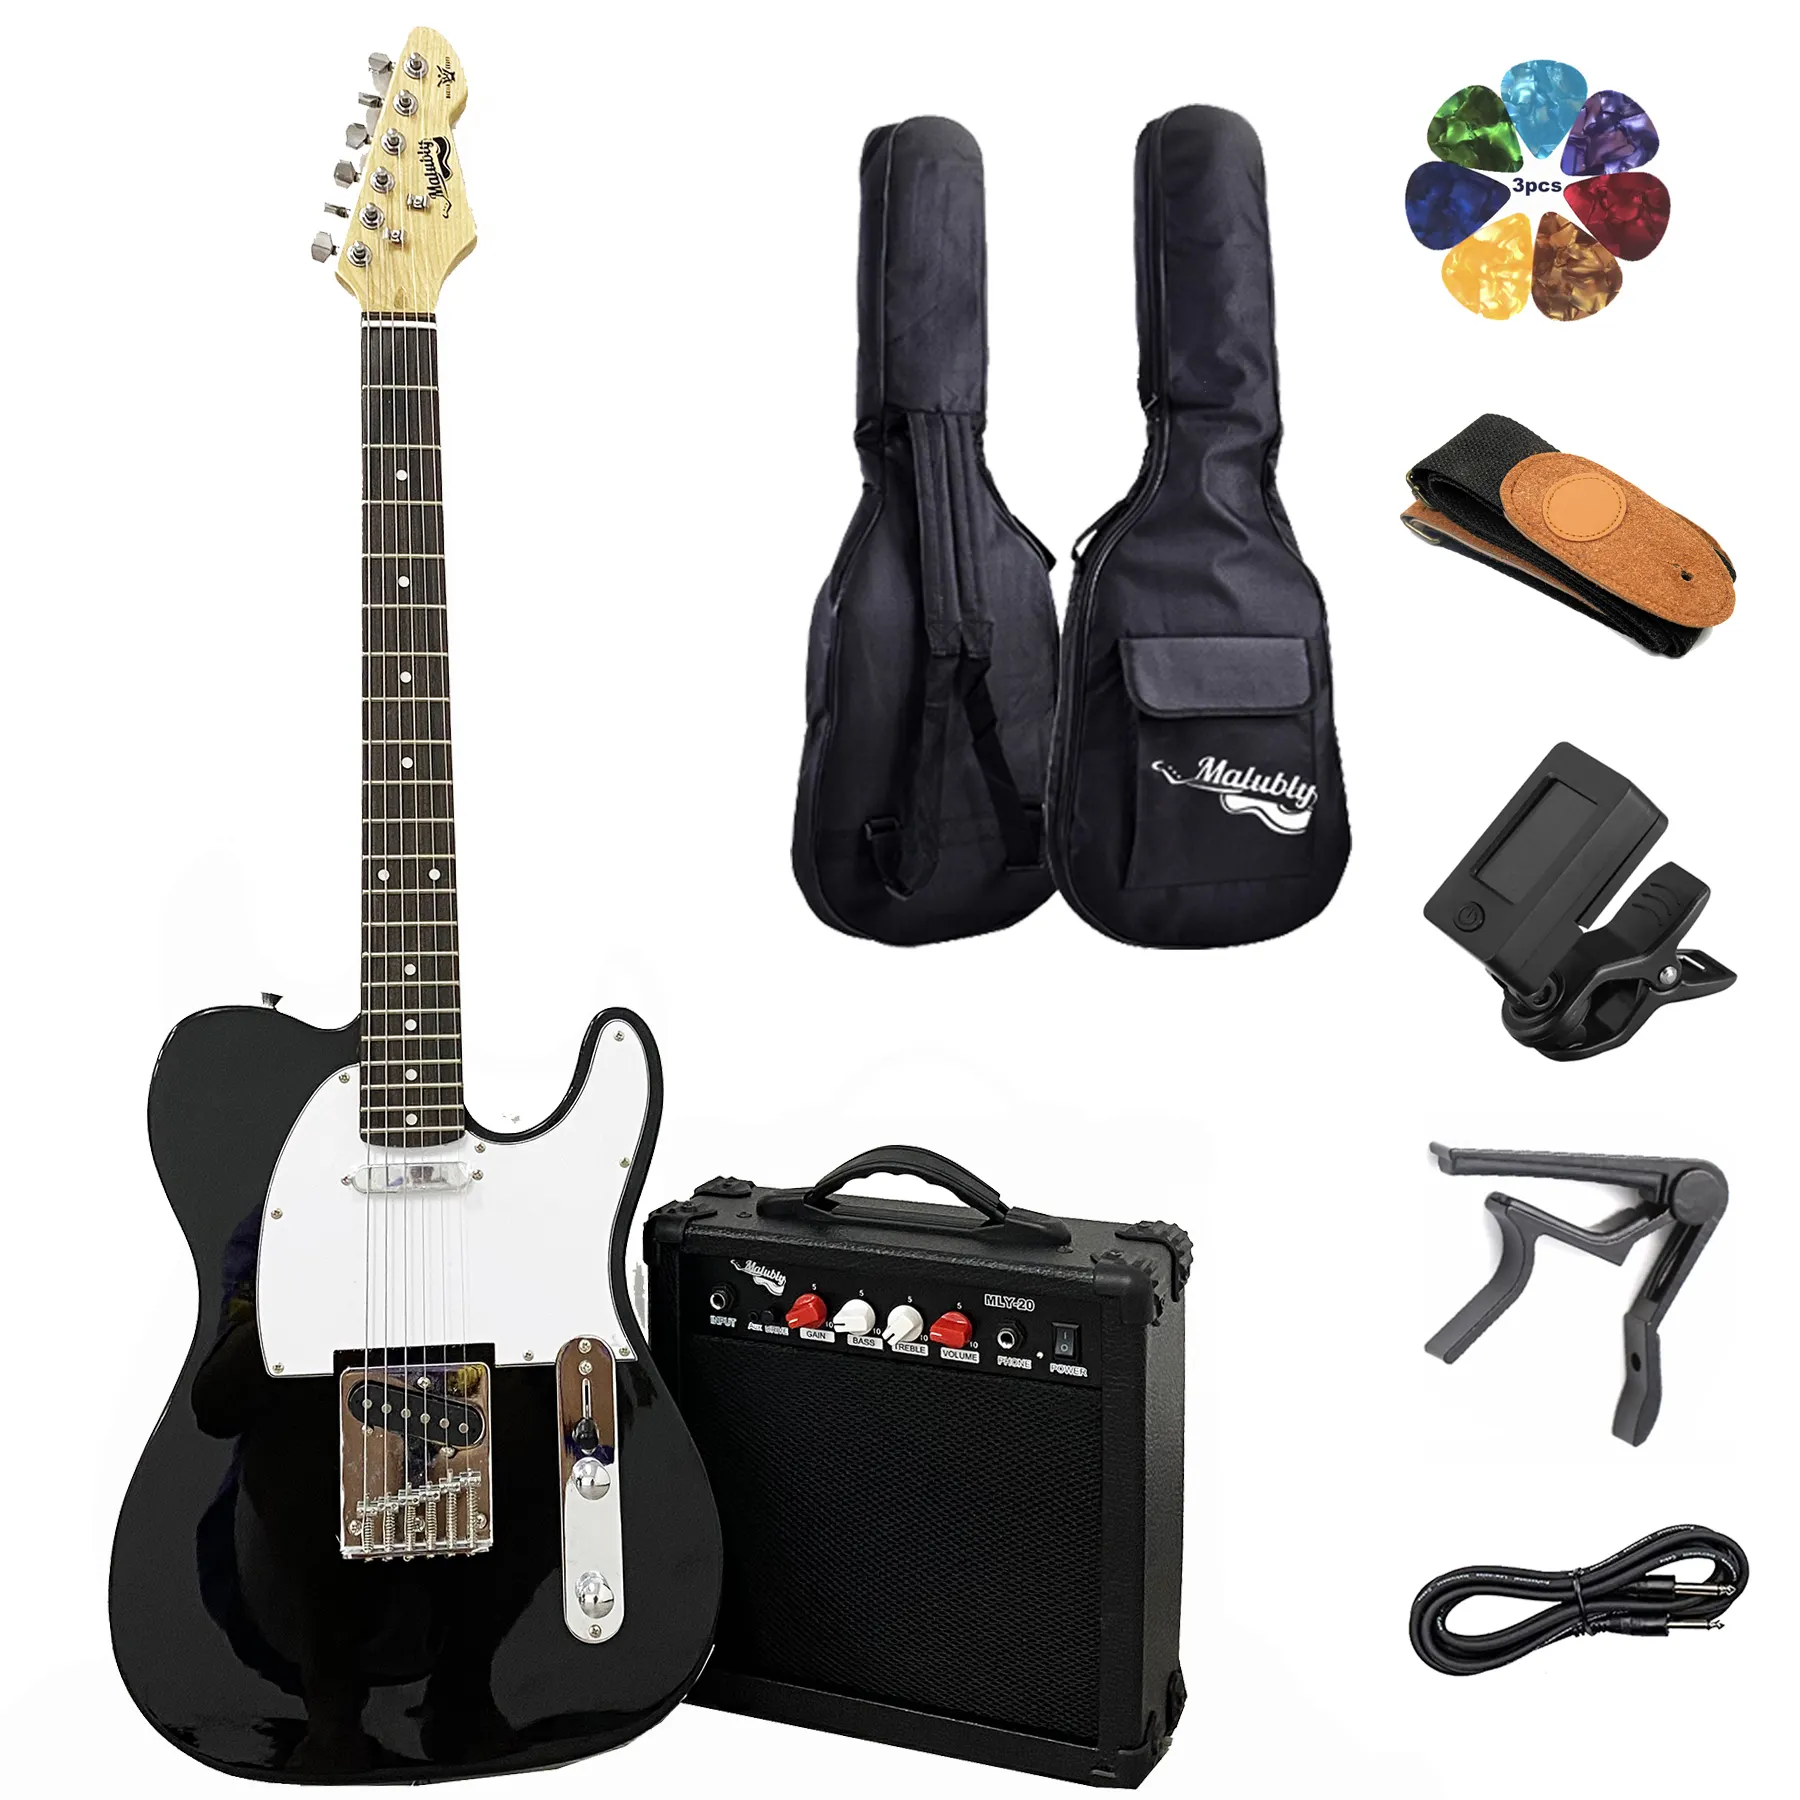 Malubly Guitars TL Black Paquete de guitarra eléctrica/Juego de Guitarra/Kit de guitarra con amplificador de 20 vatios a la venta